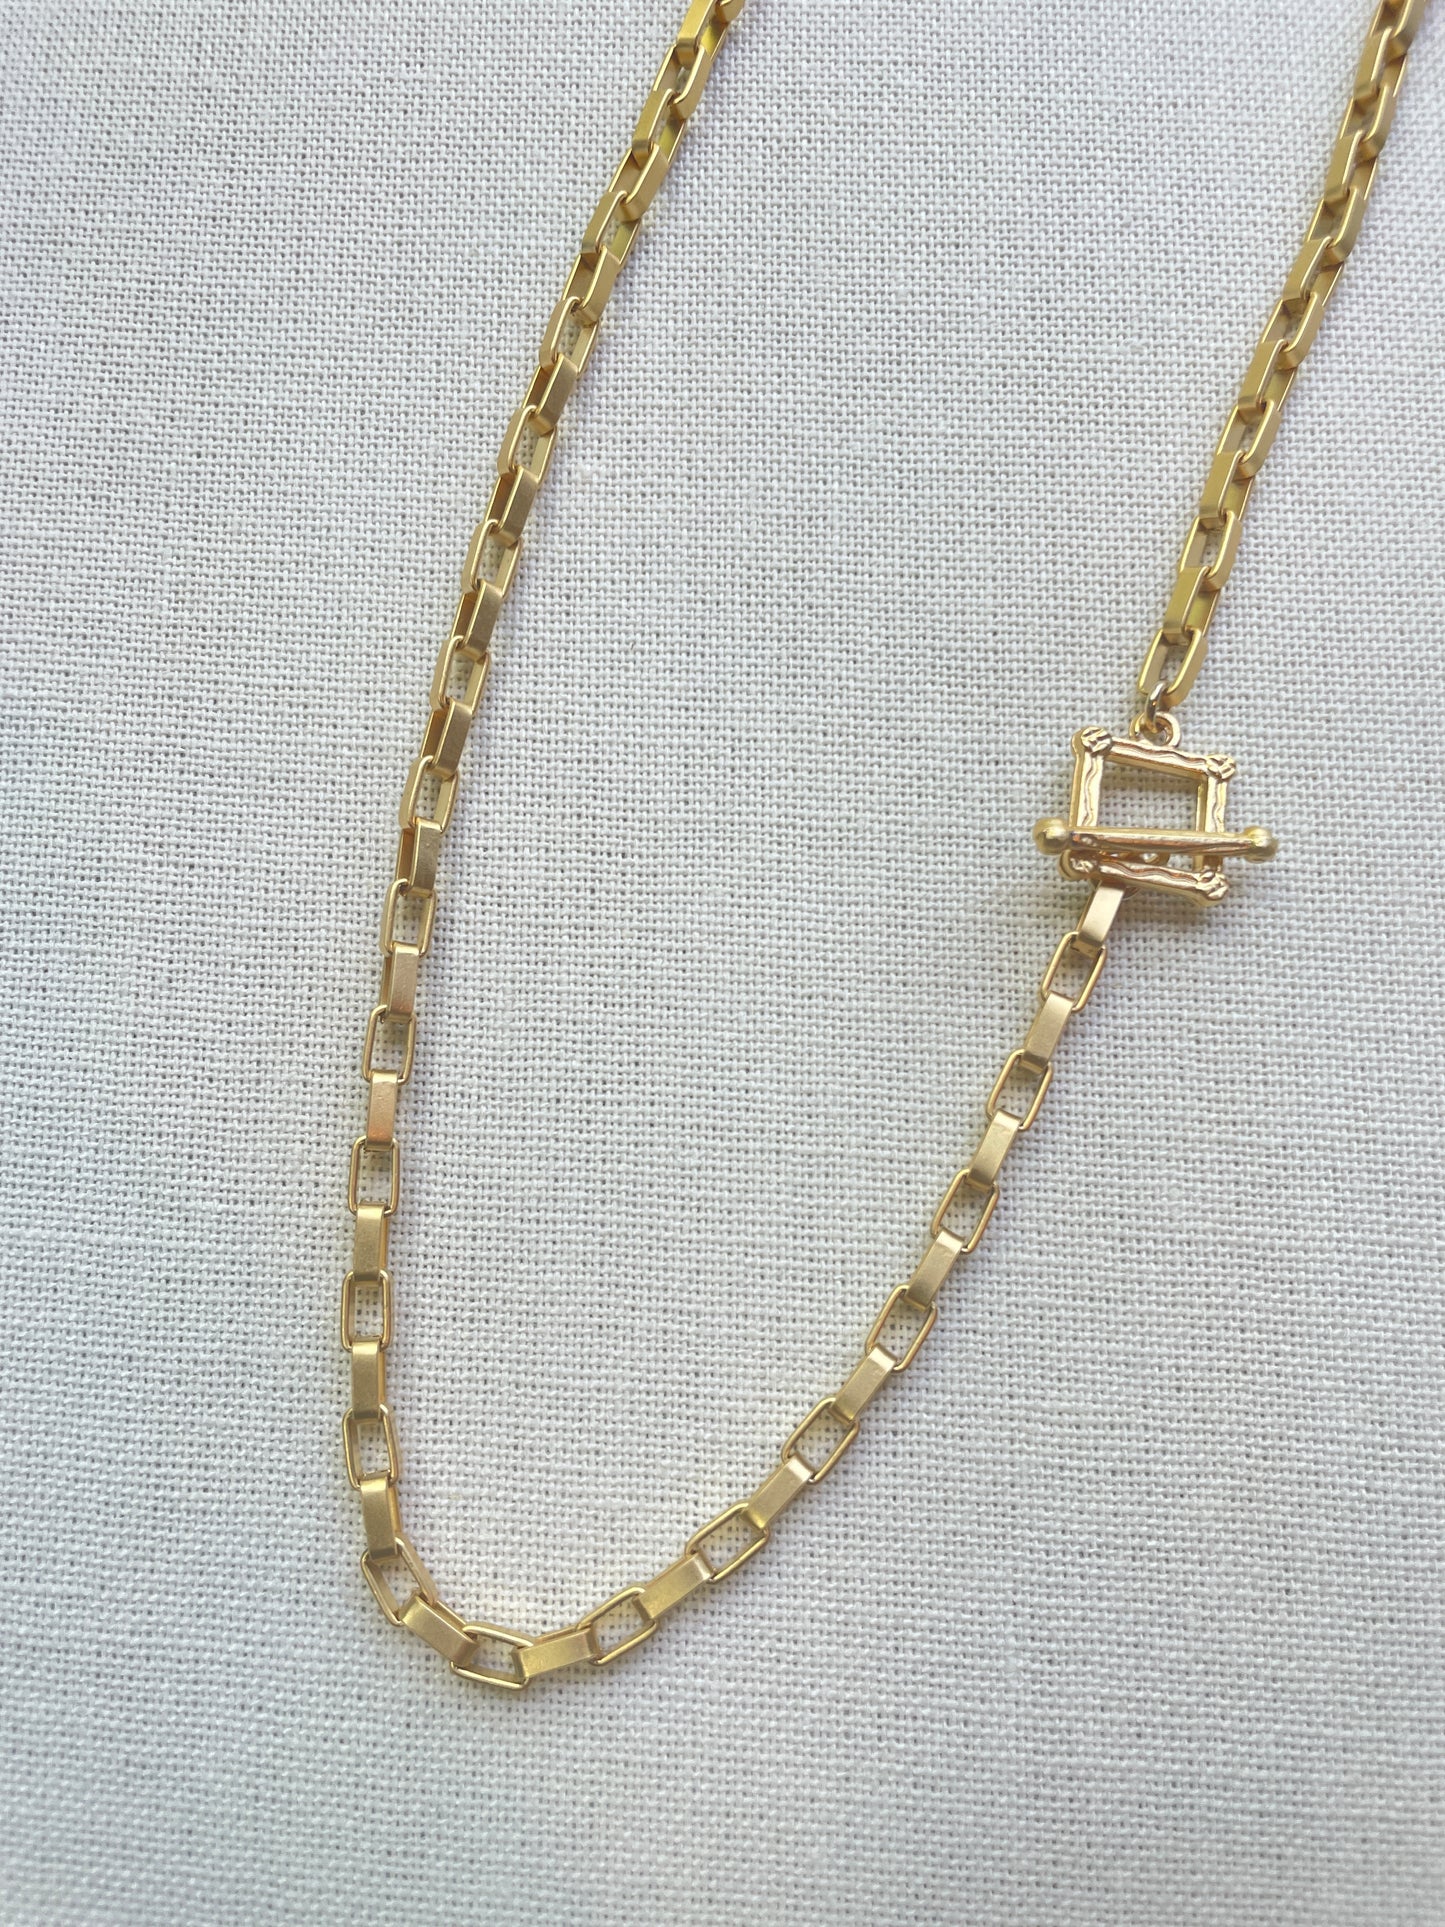 Gold Link Necklace/Bracelet